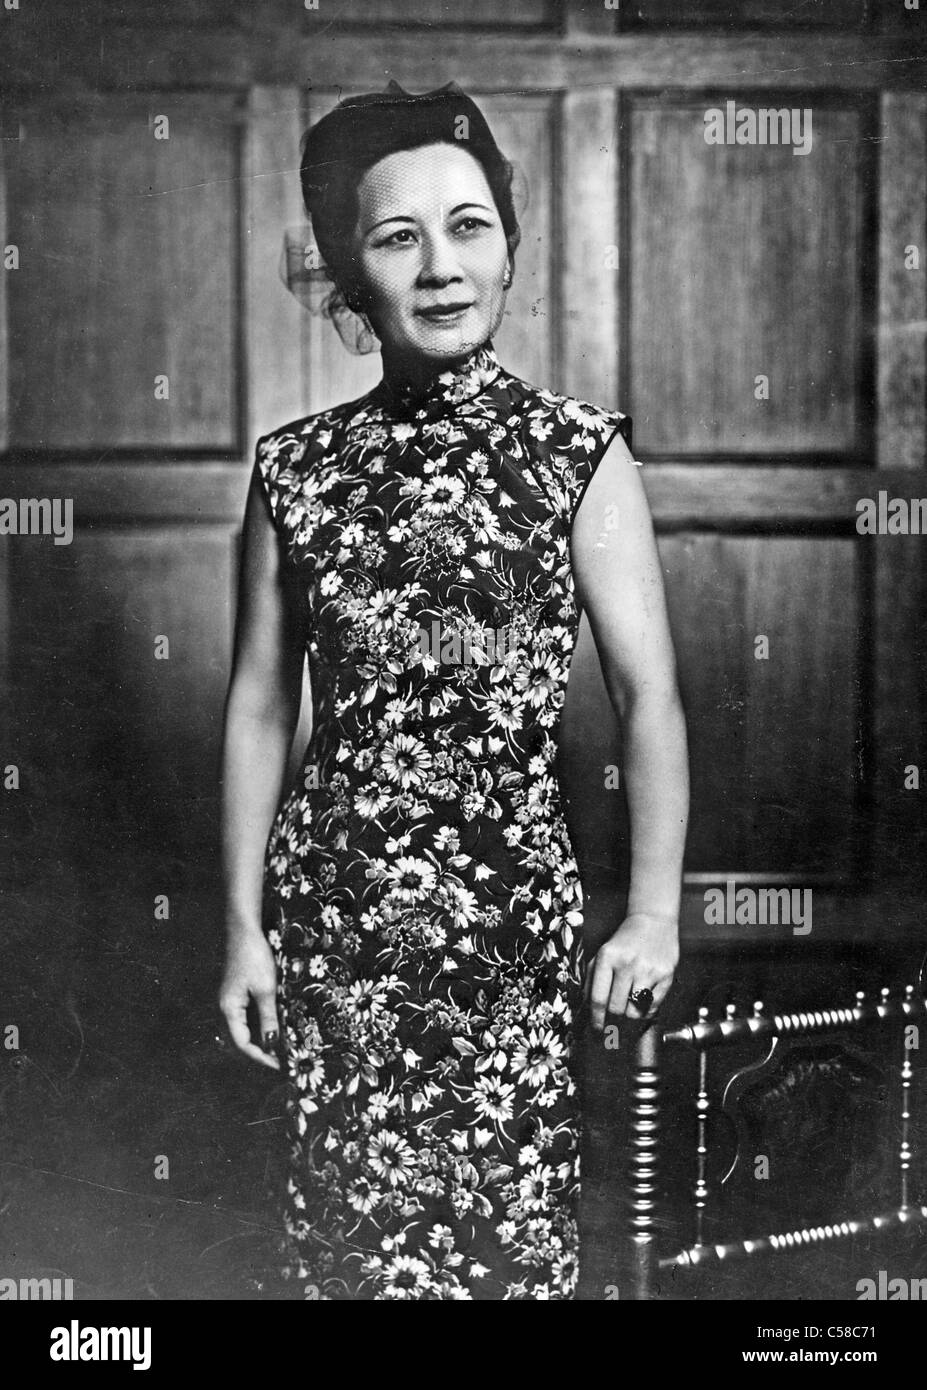 MADAME Chiang Kai-shek Soong maggio-ling (1897-2003) la quarta e ultima moglie del partito nazionalista leader cinese Foto Stock